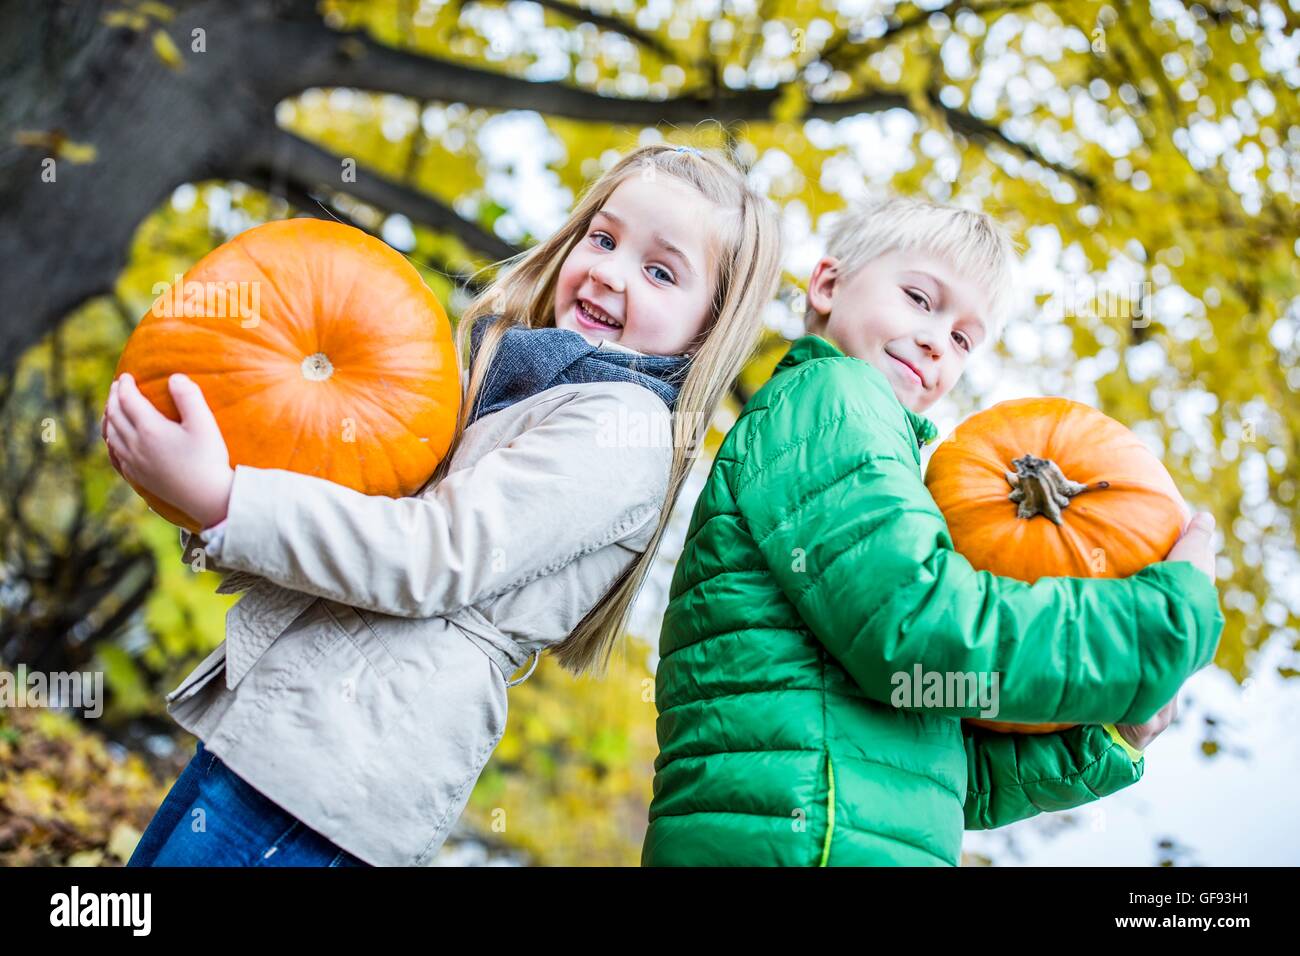 Modello rilasciato. I bambini tenendo la zucca nel parco, ritratto, sorridente. Foto Stock